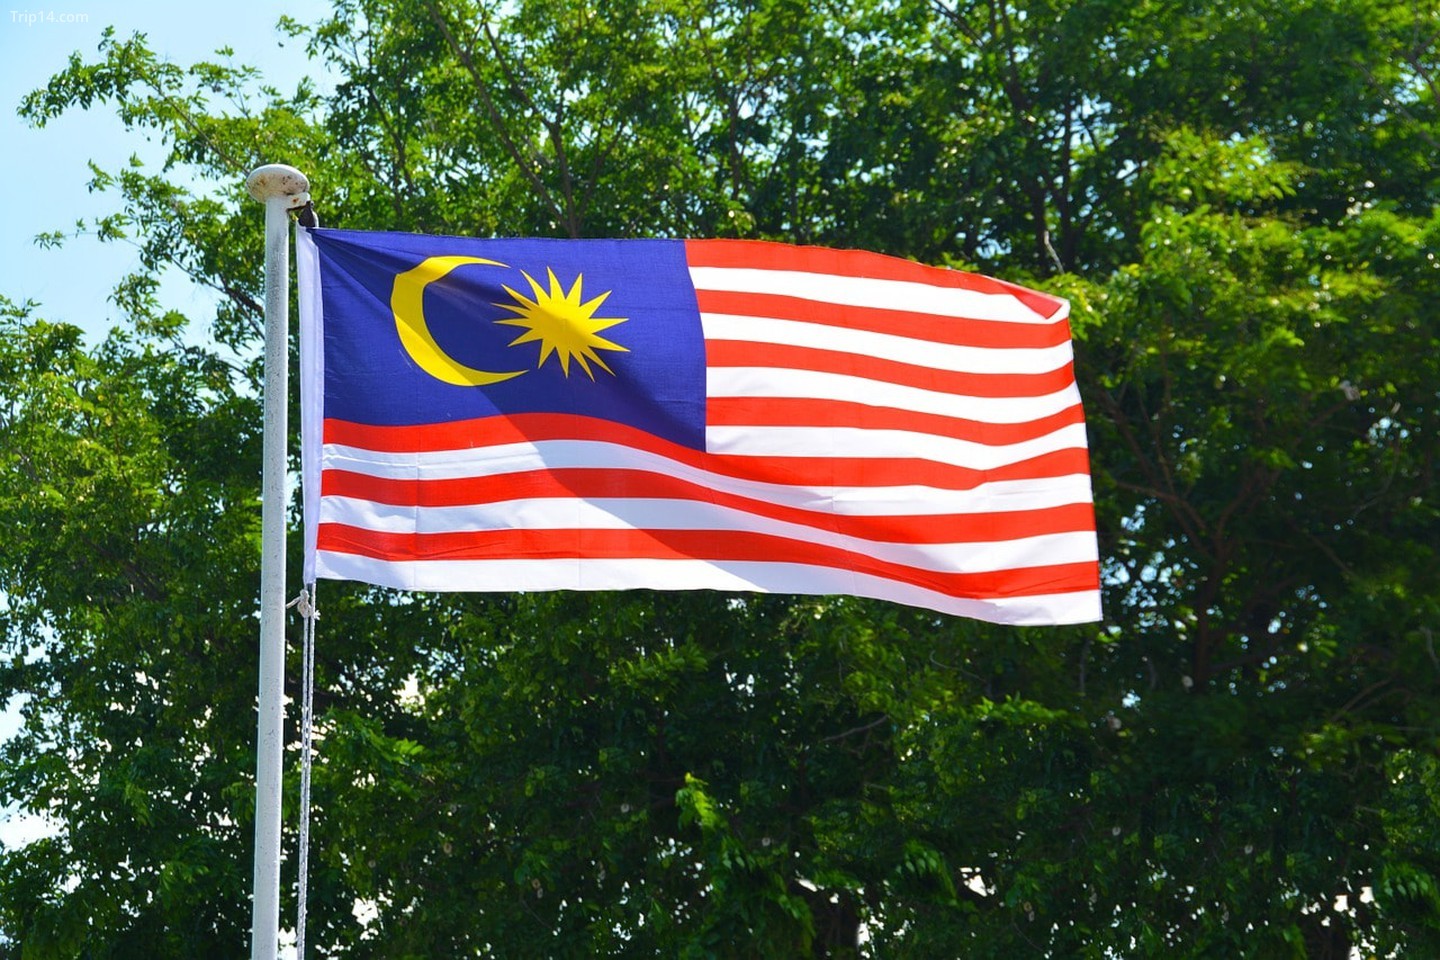 Bạn đang muốn mua một quốc kỳ Malaysia để tượng trưng cho tình yêu với đất nước này? Hãy cùng xem hình ảnh chất lượng cao của các bức tranh quốc kỳ với mẫu mã và thiết kế đa dạng, đảm bảo sẽ đem lại sự hài lòng cho bạn.